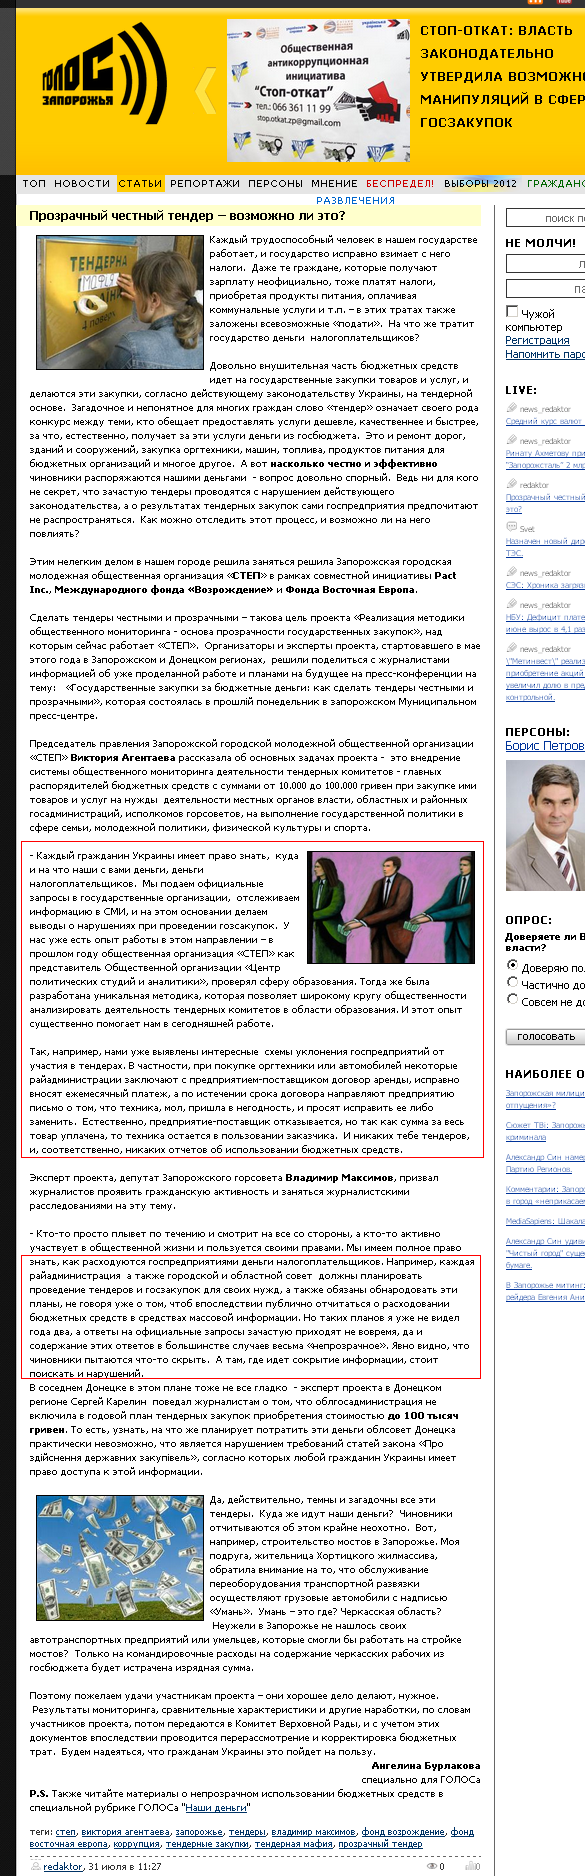 http://golos.zp.ua/article/3109-prozrachnyy-chestnyy-tender-vozmozhno-li-eto.html